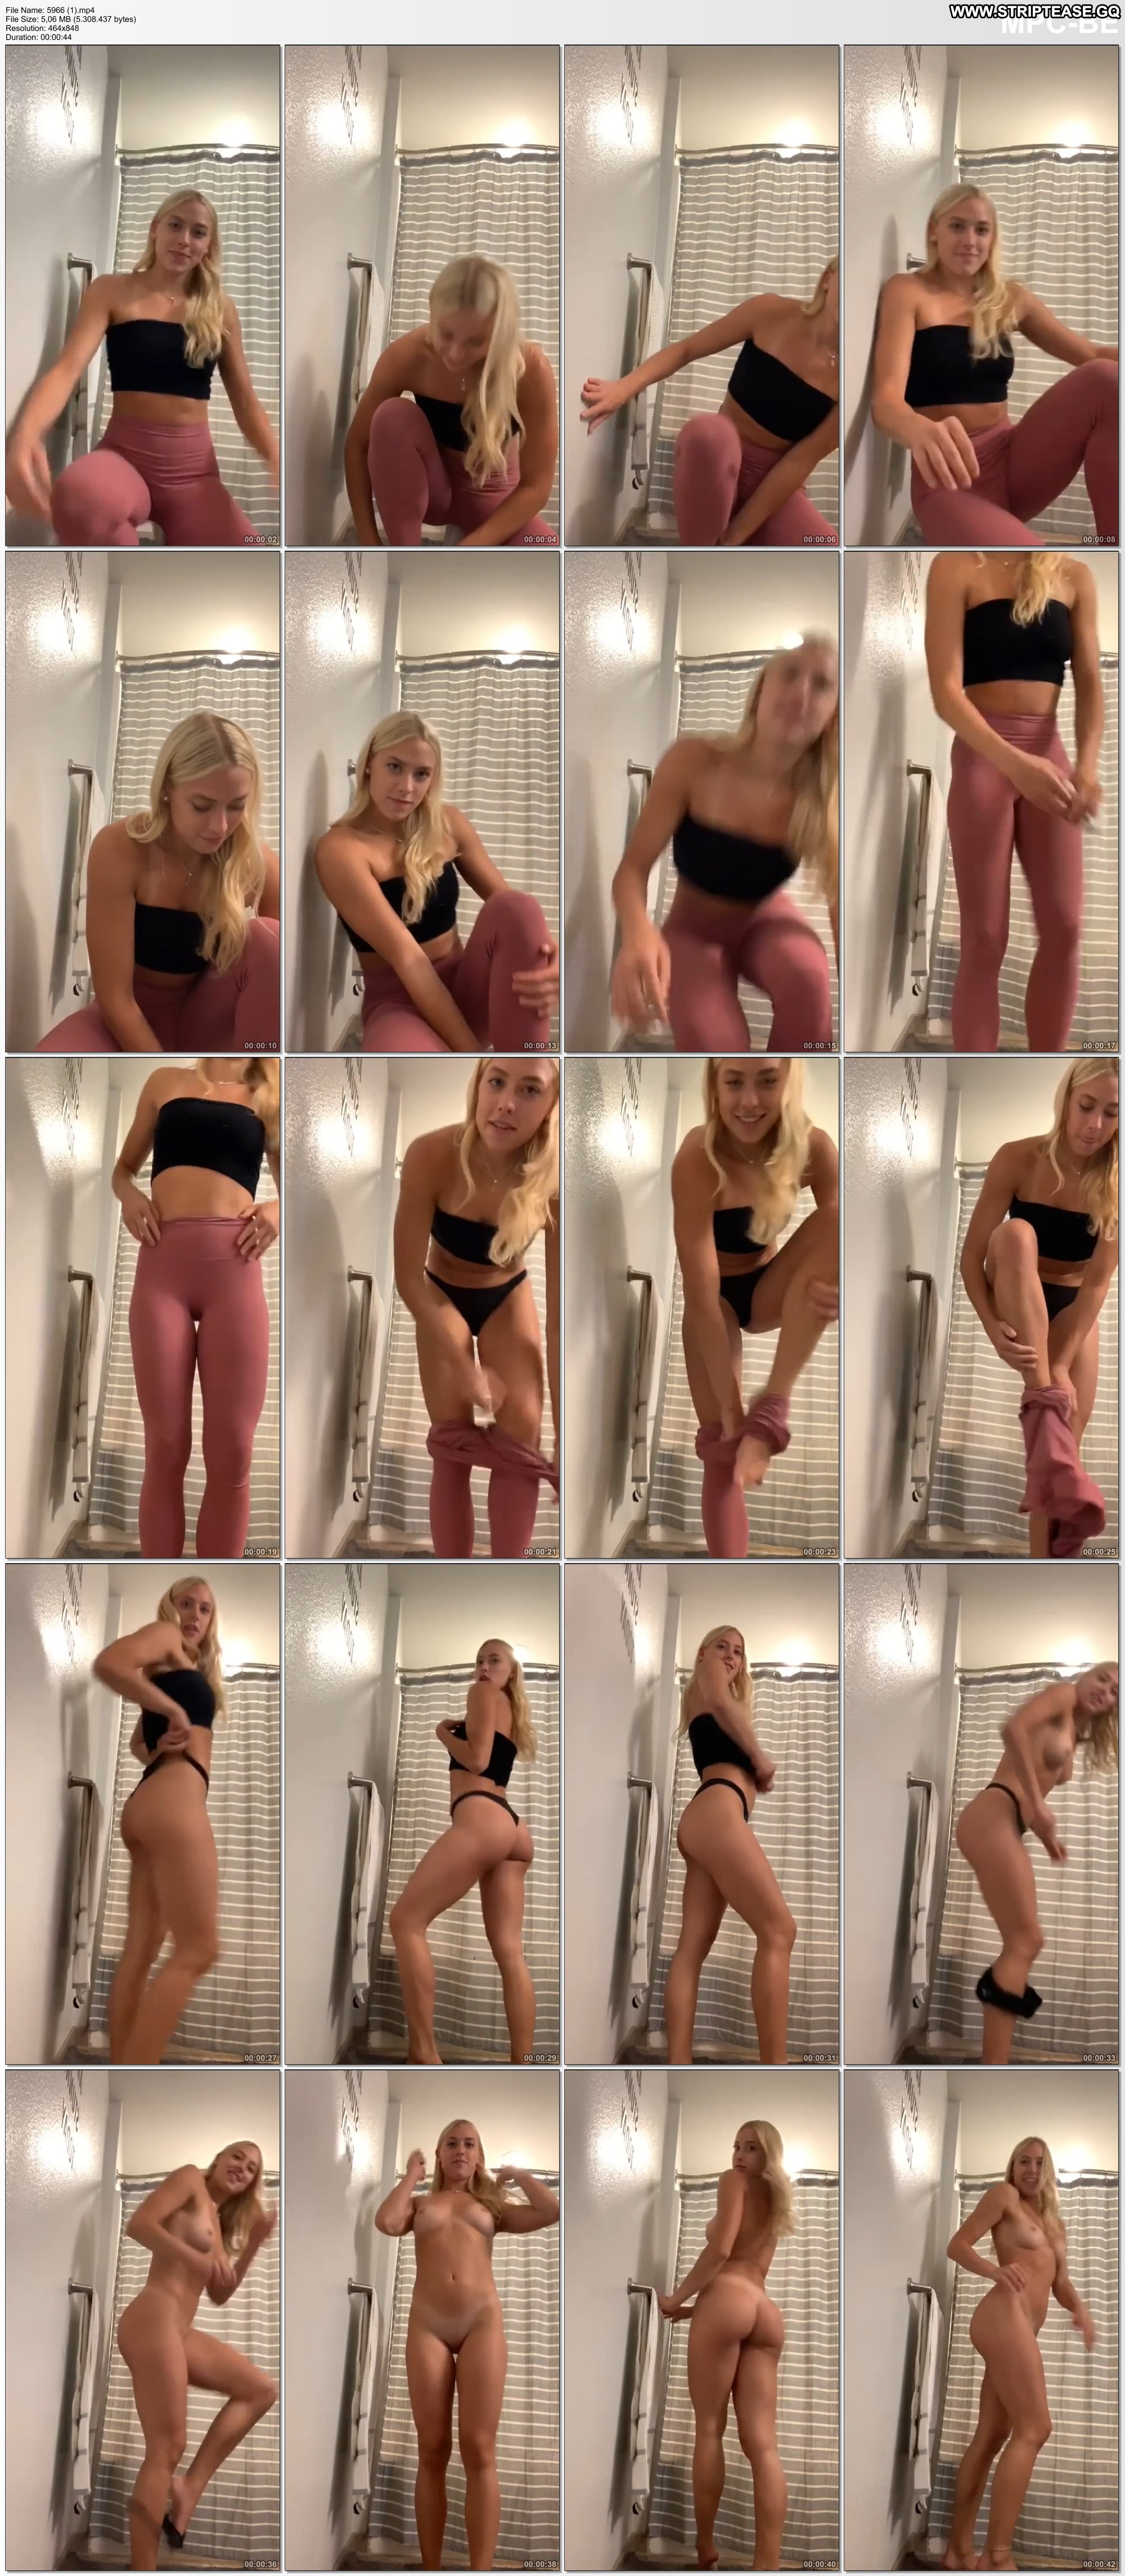 Annmarie Private Stripping Ass Sex Undressing Nude Teen Selfie Girls